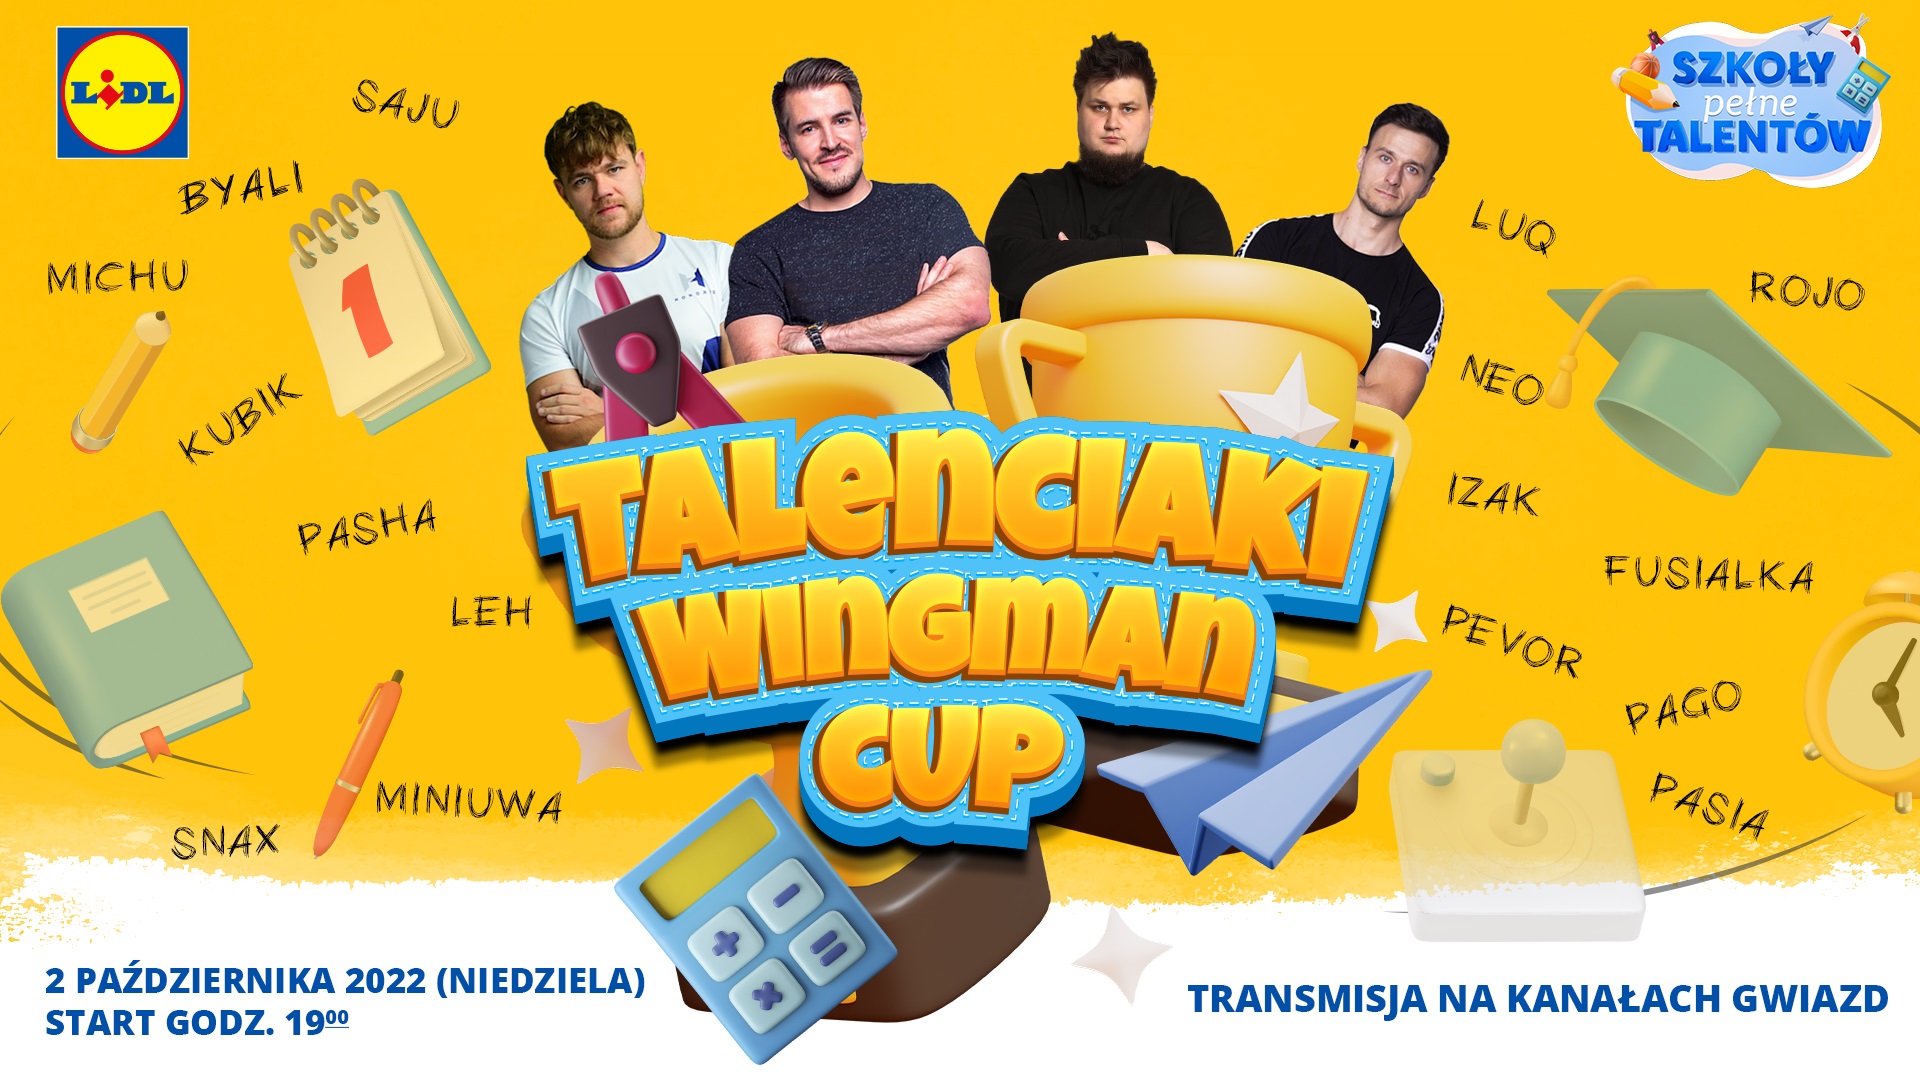 Talenciaki Wingman Cup